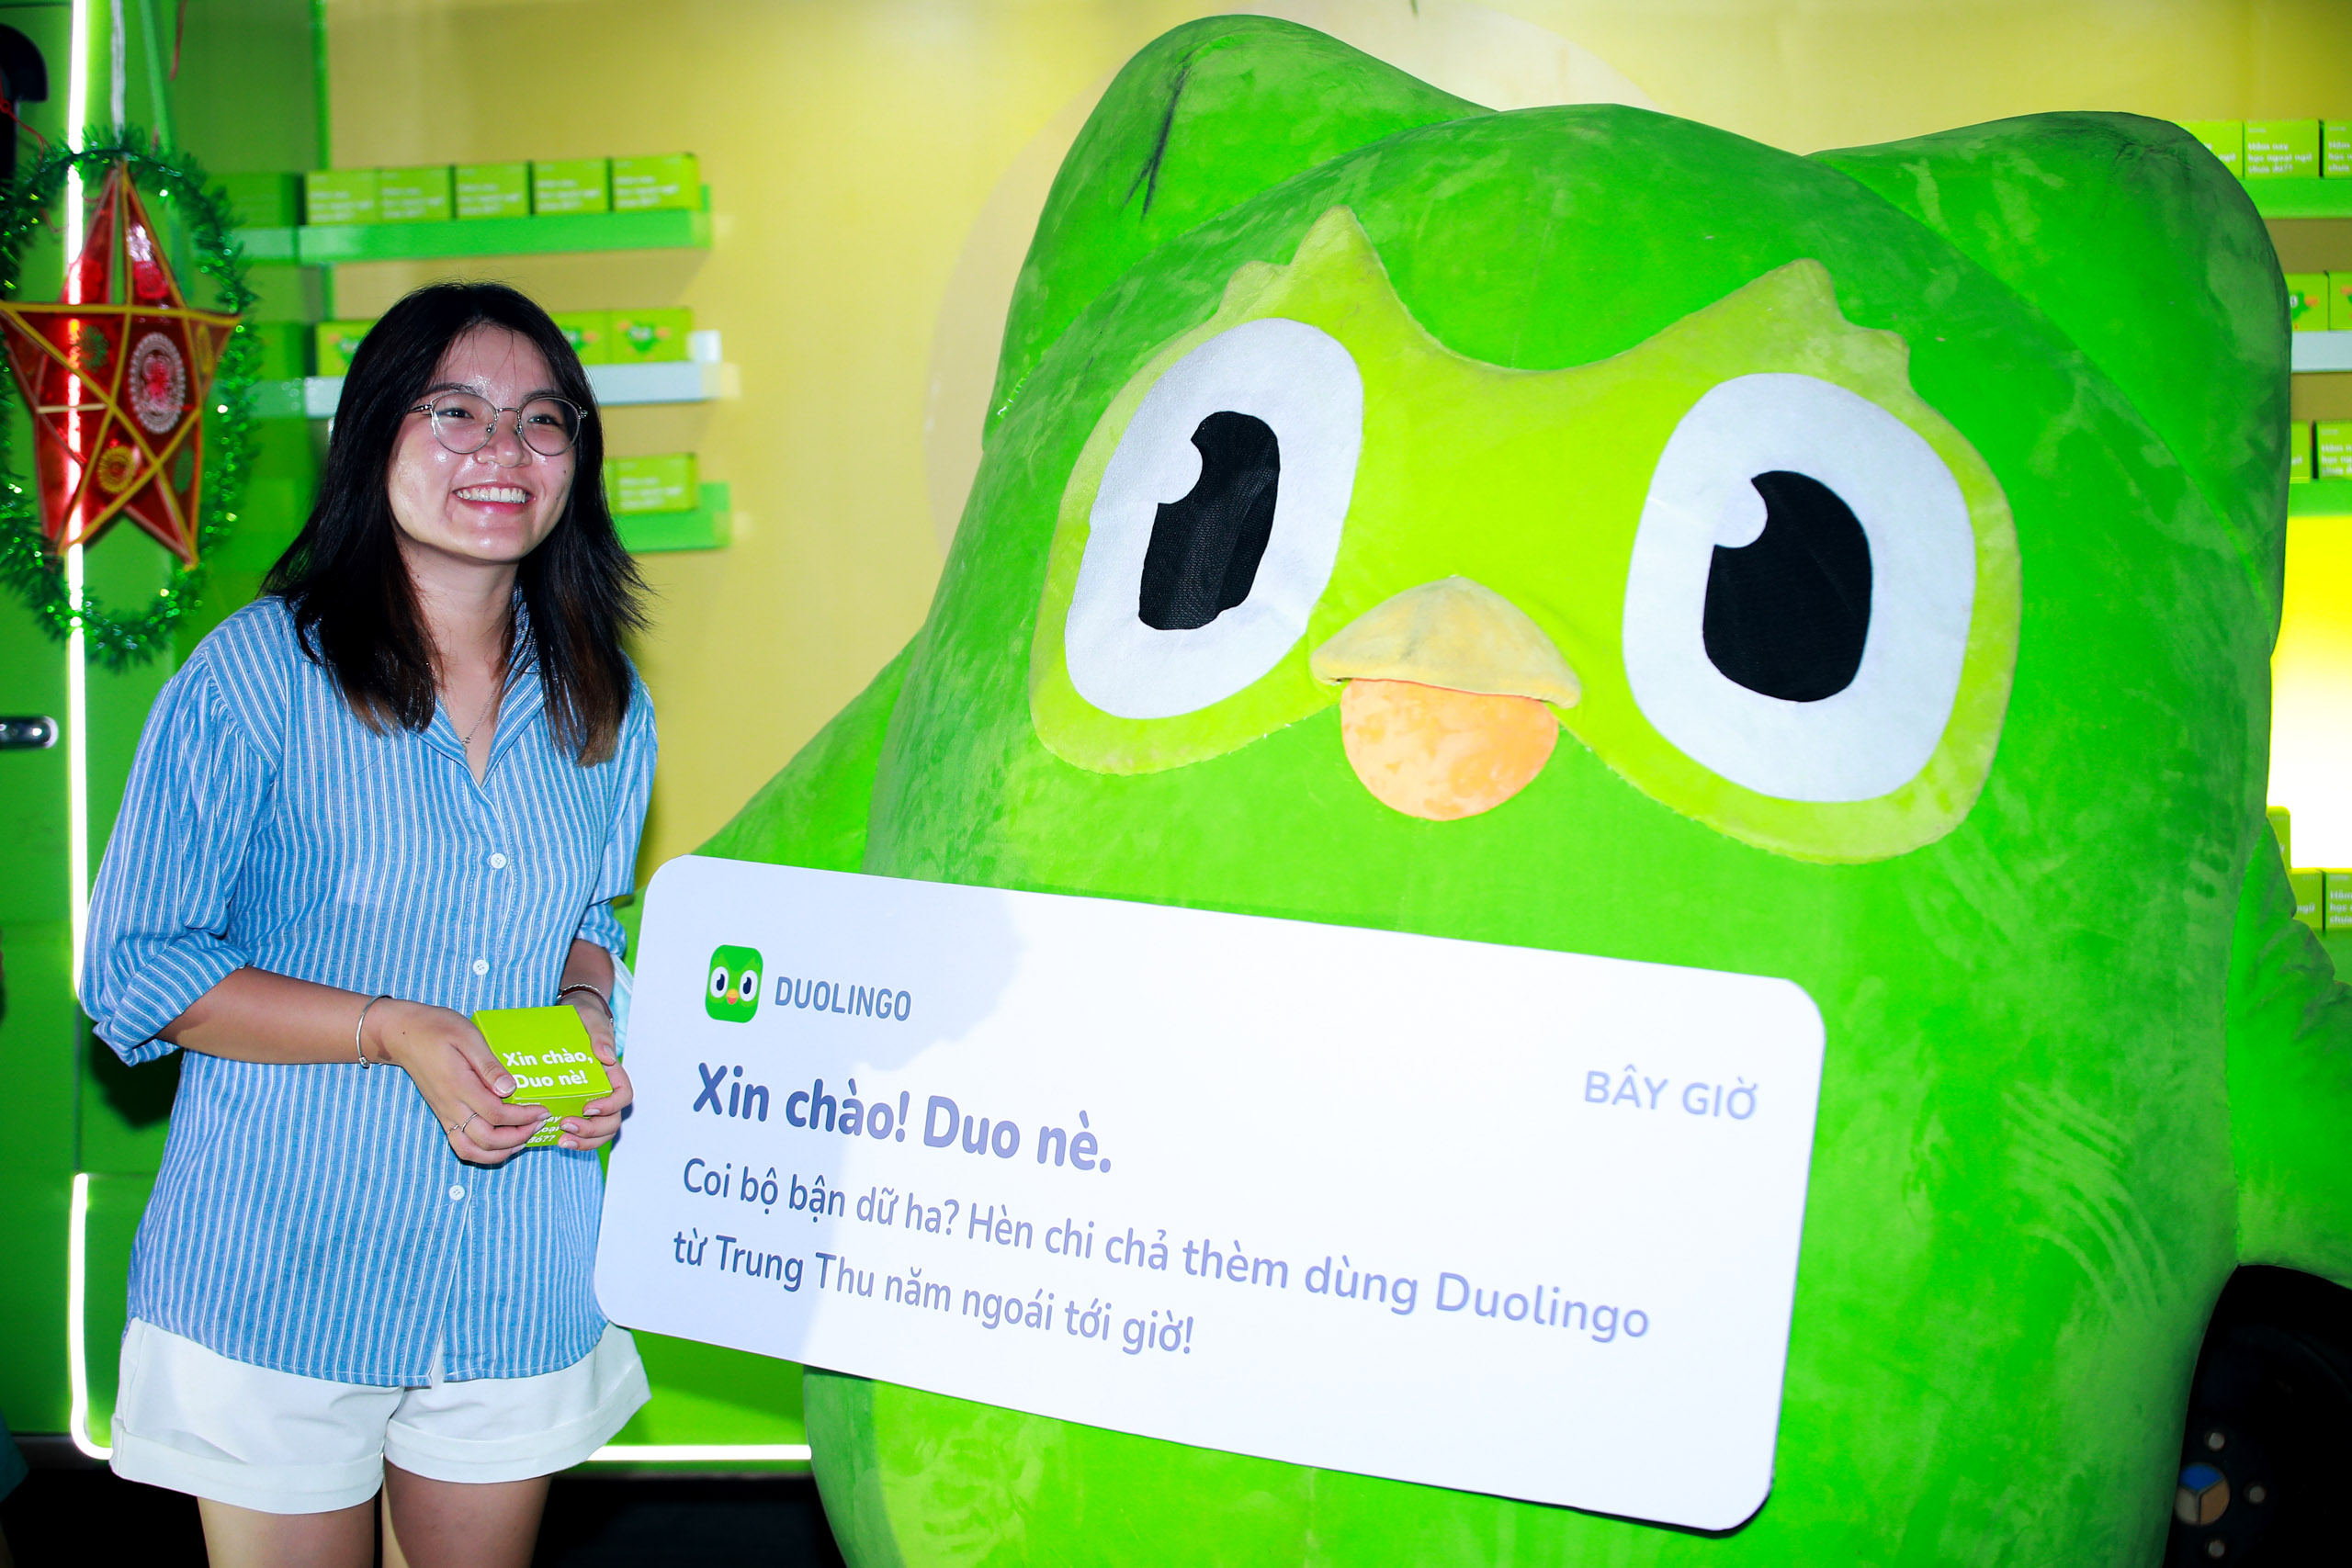 Duolingo lần đầu đến Việt Nam với những chiếc bánh Trung Thu nhắc nhở học ngoại ngữ